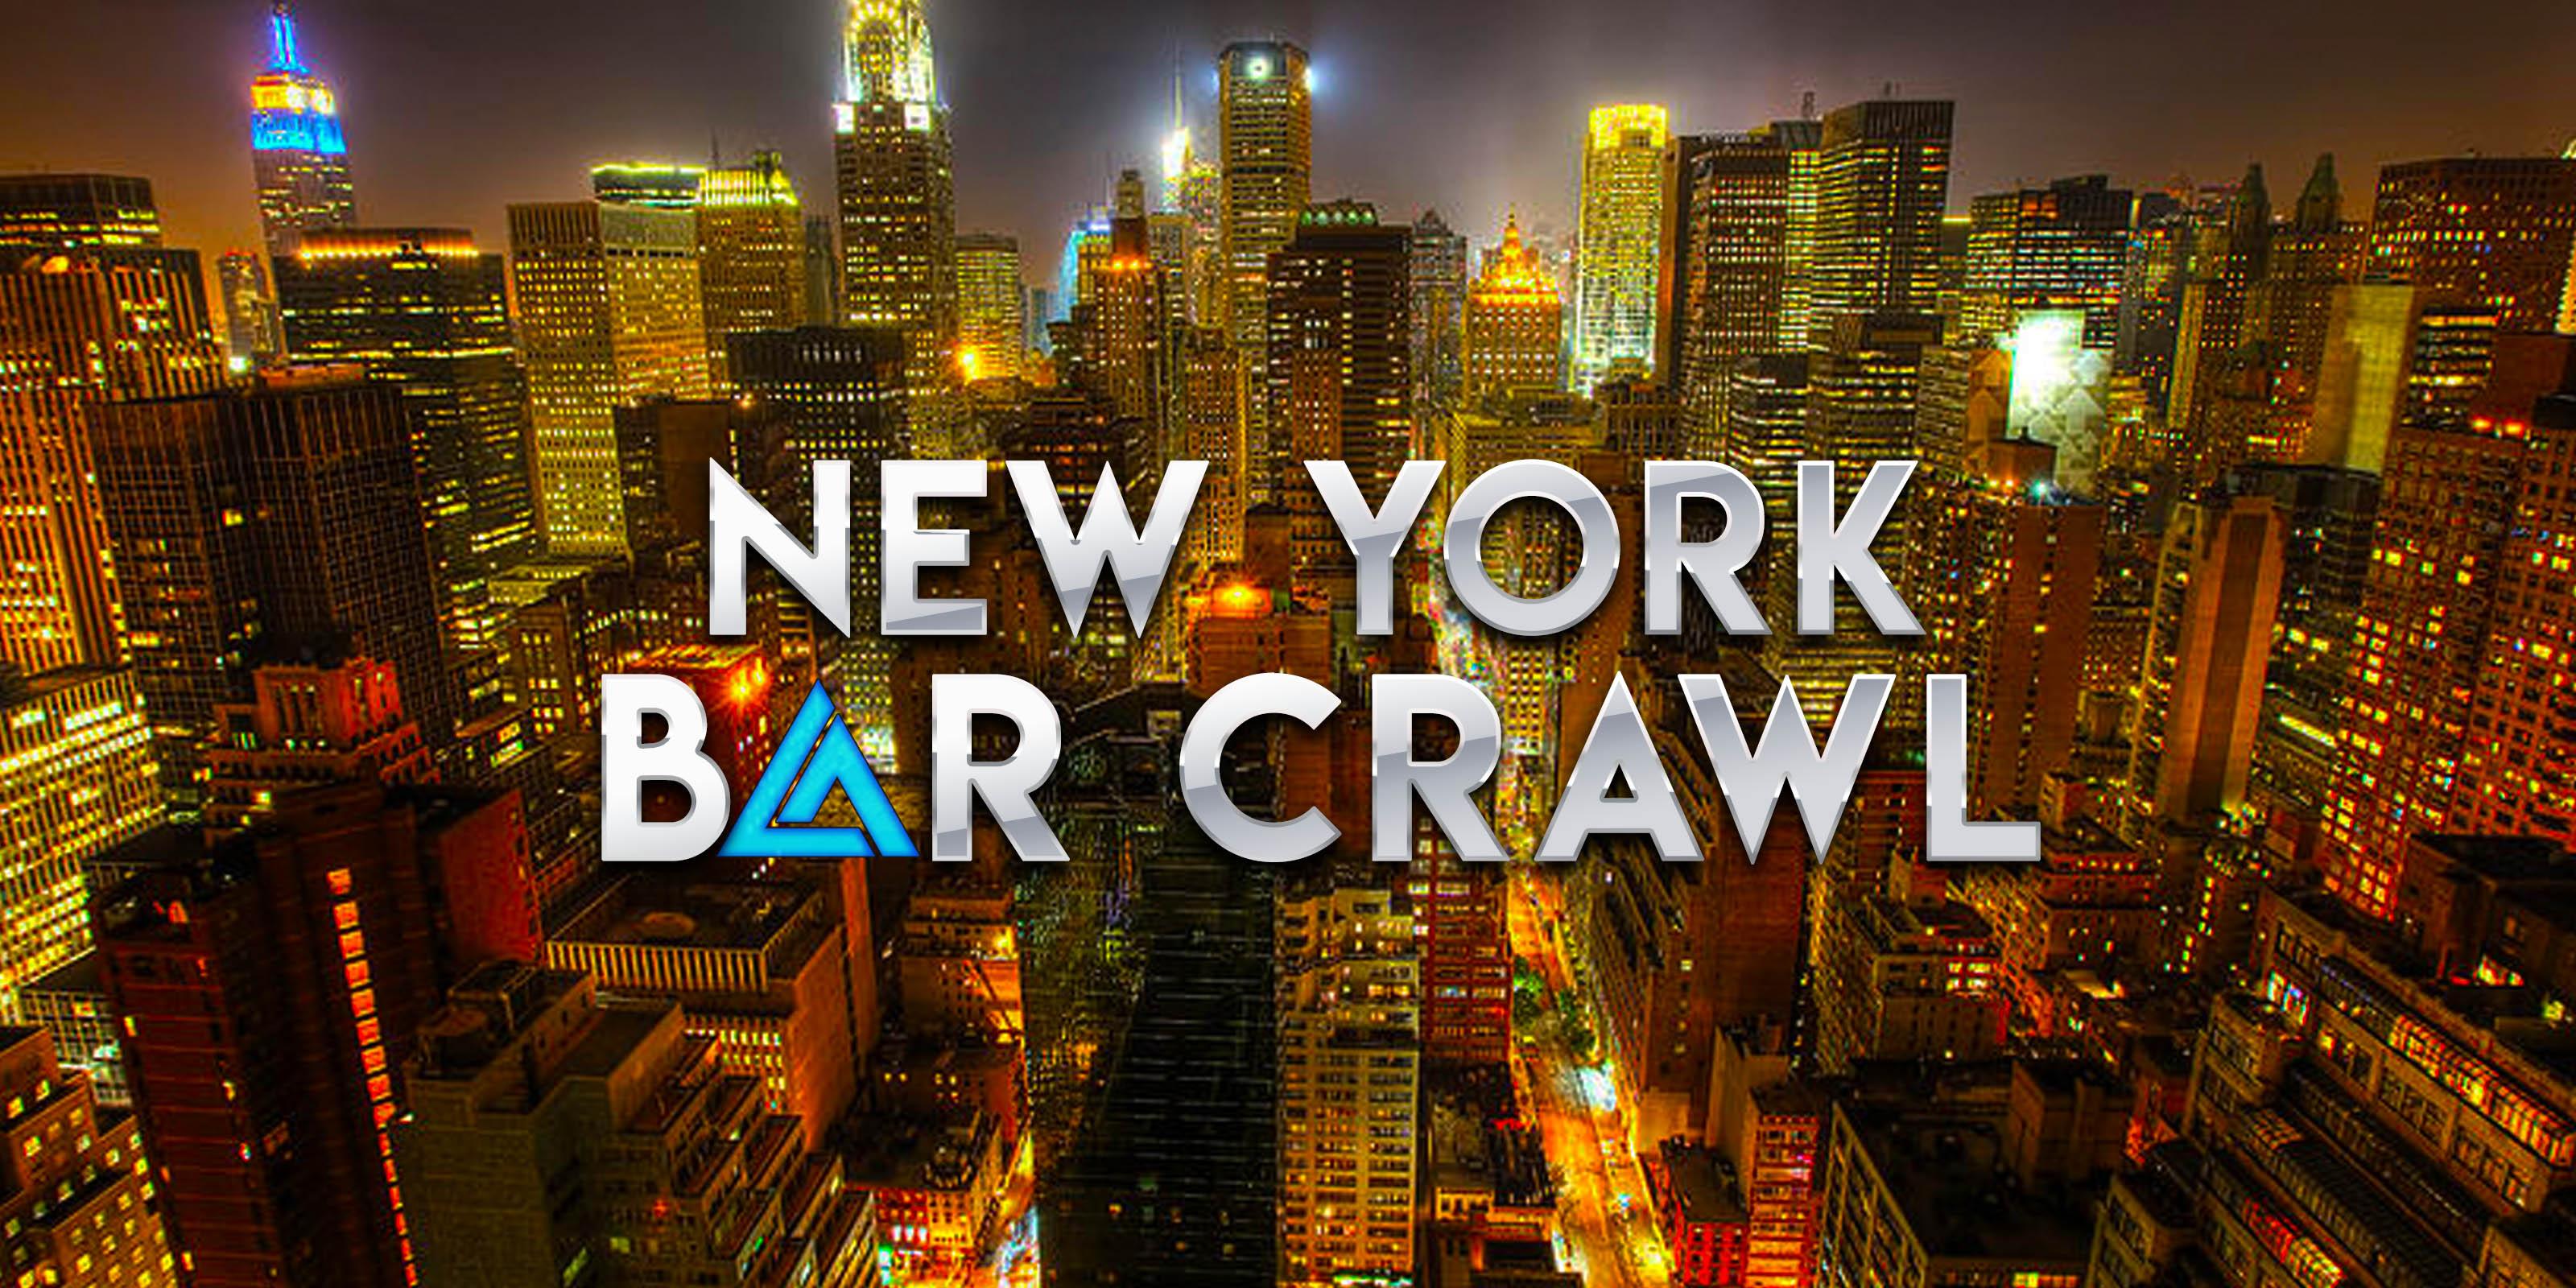 BAR CRAWL NYC